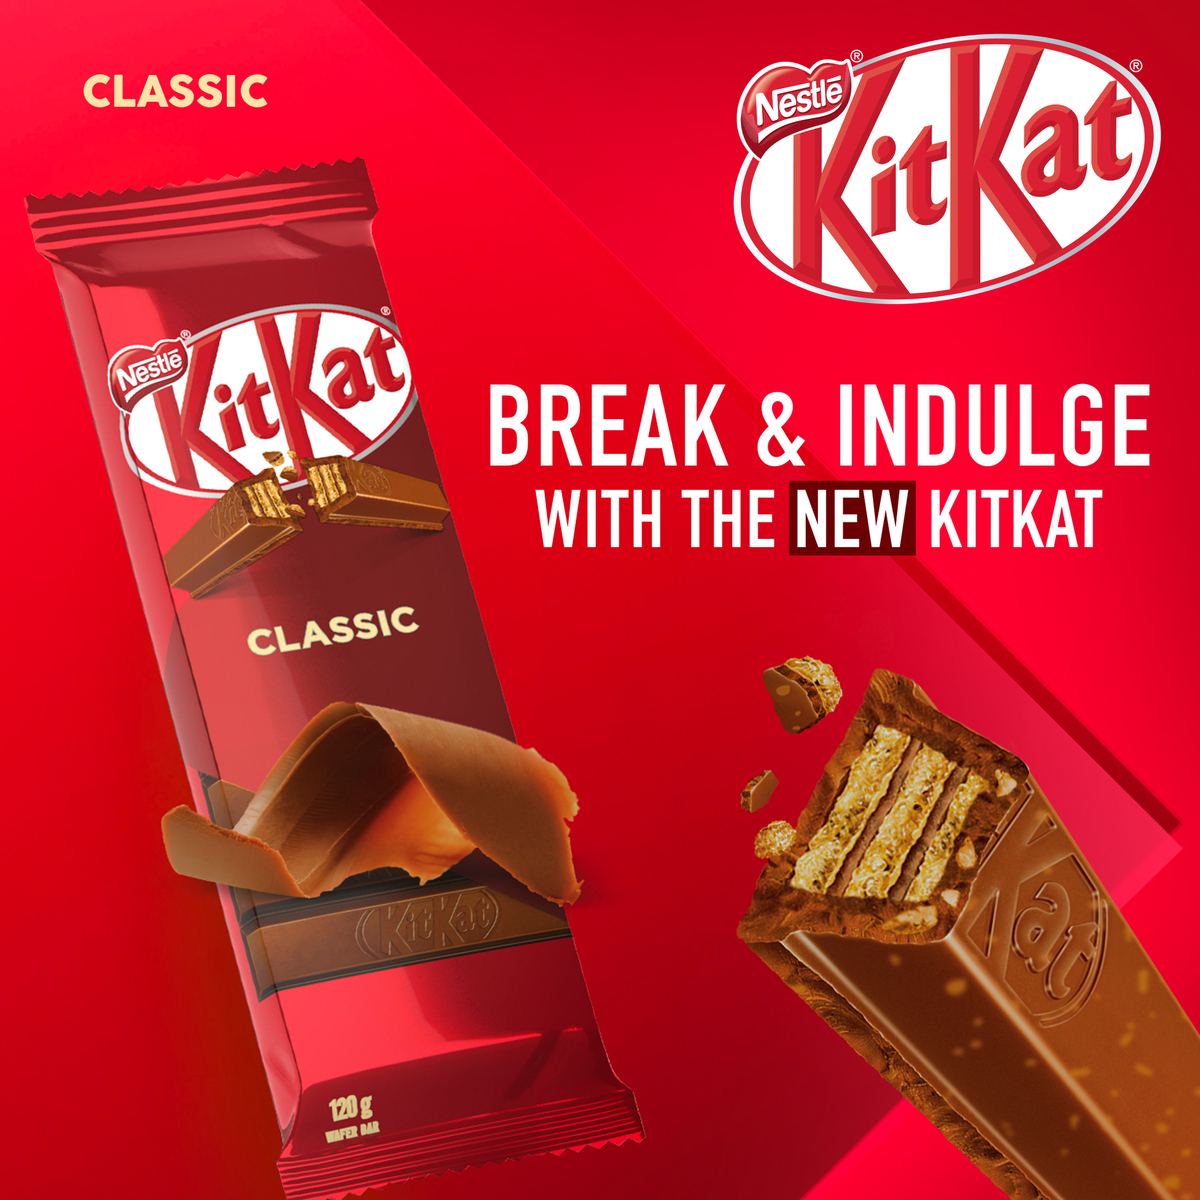 Nestle KitKat Classic 120 g